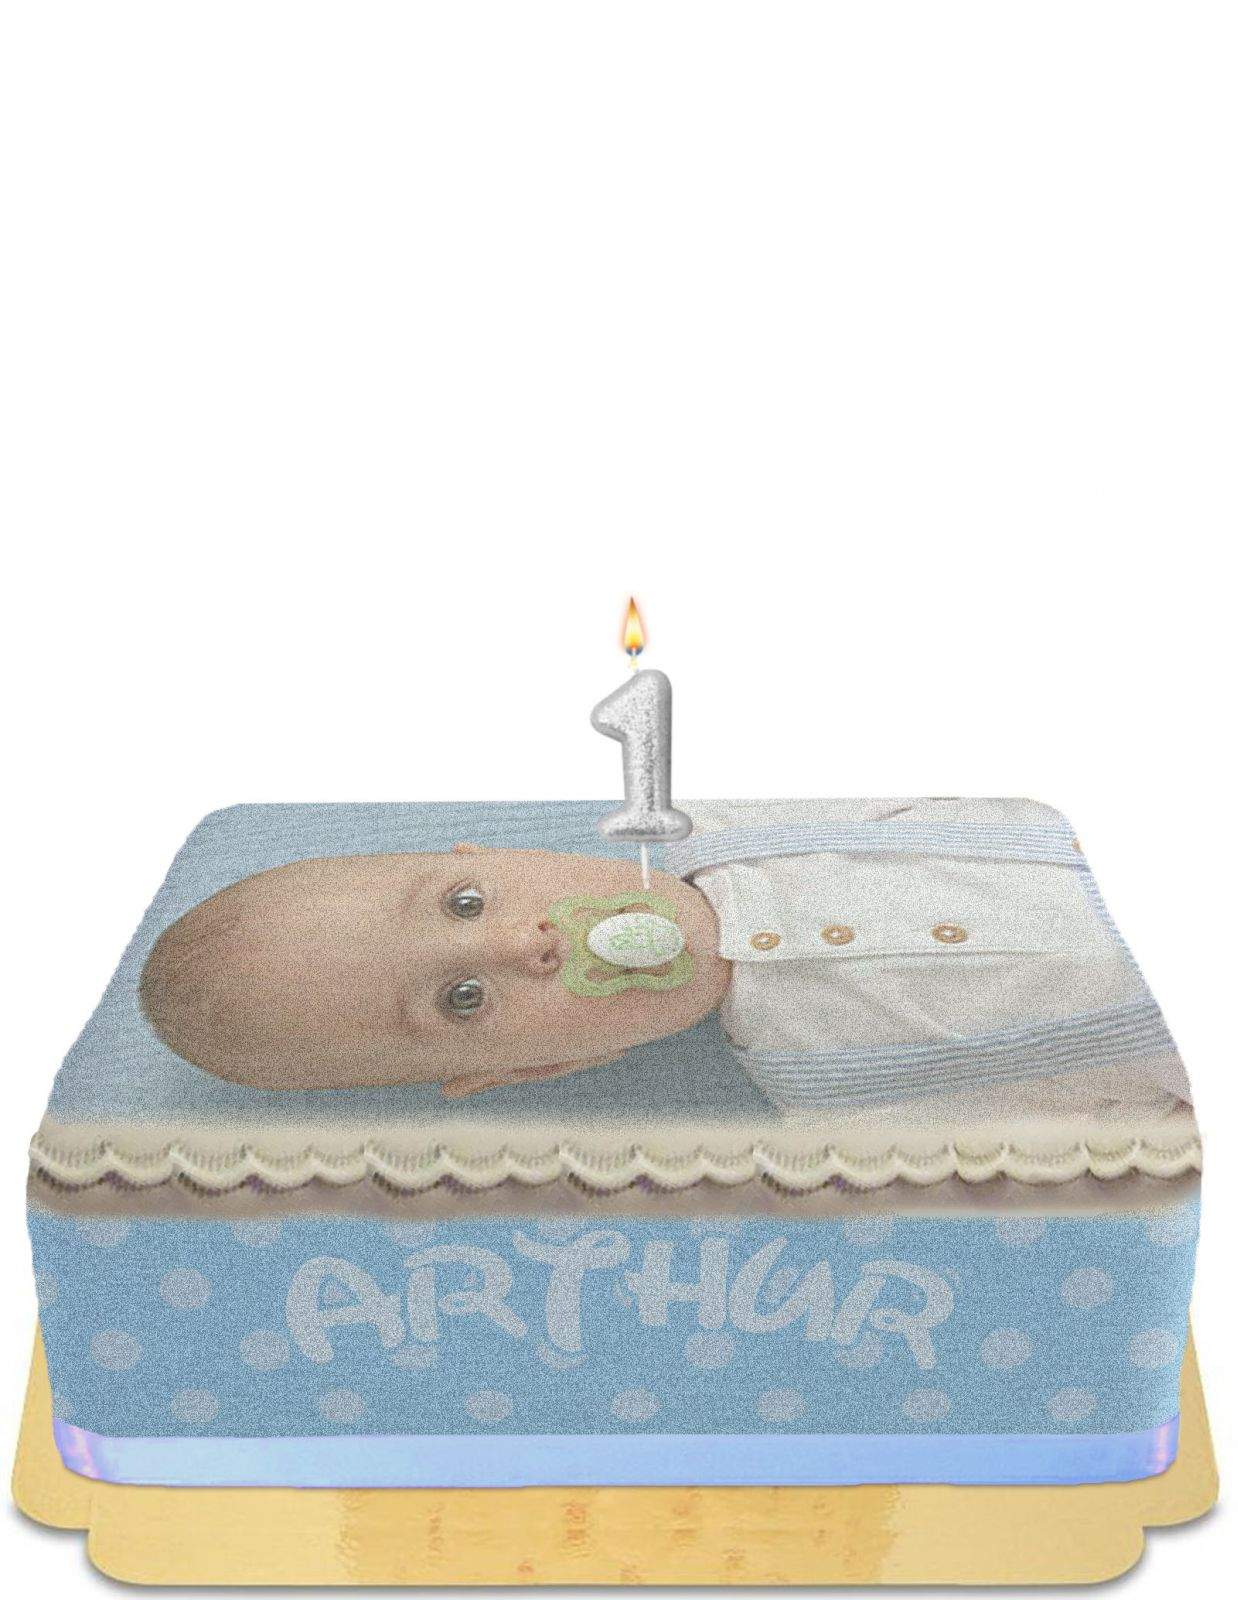 Gâteau d'anniversaire pour bébé garçon avec photo vegan et sans gluten